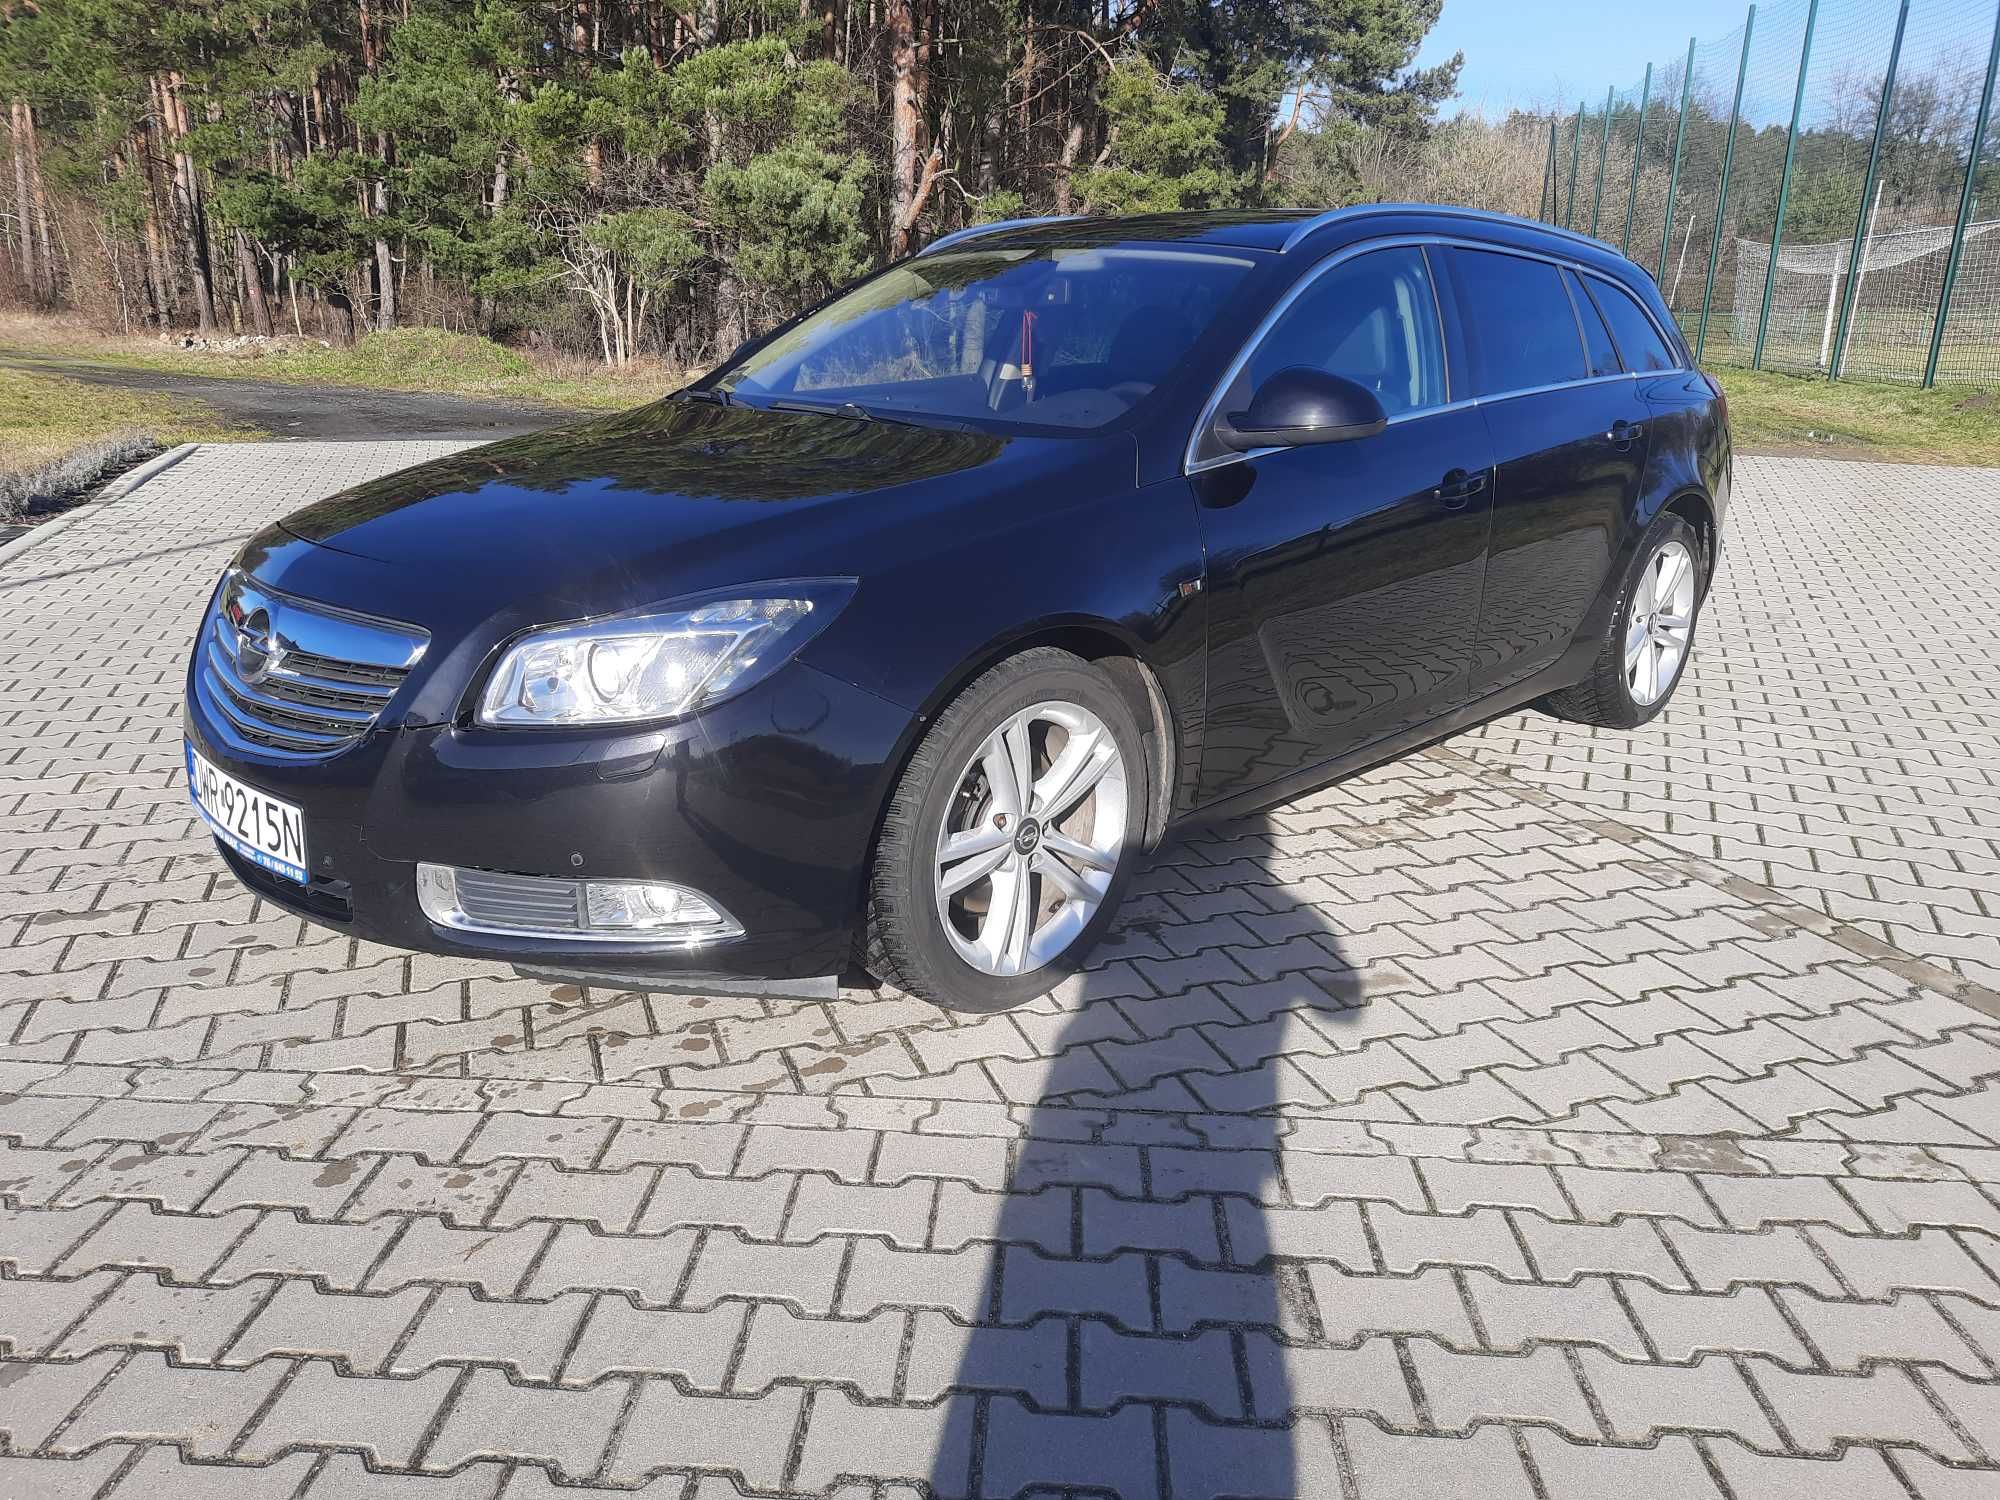 Opel insignia 2009 r. 2.0 diesel 160 km uszkodzony